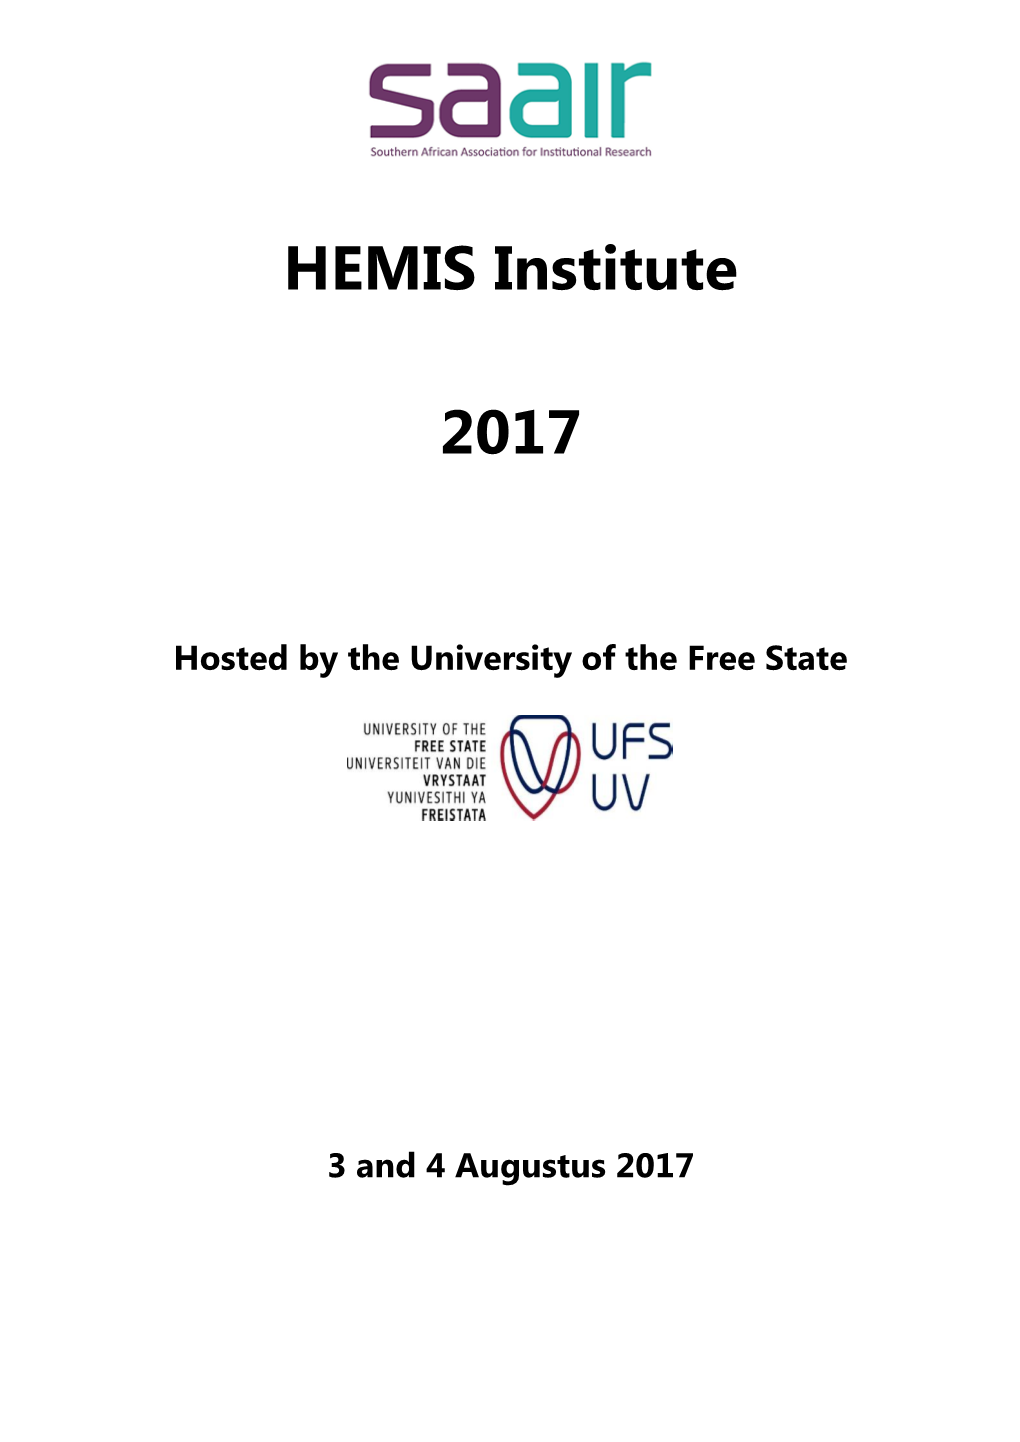 HEMIS Institute 2017